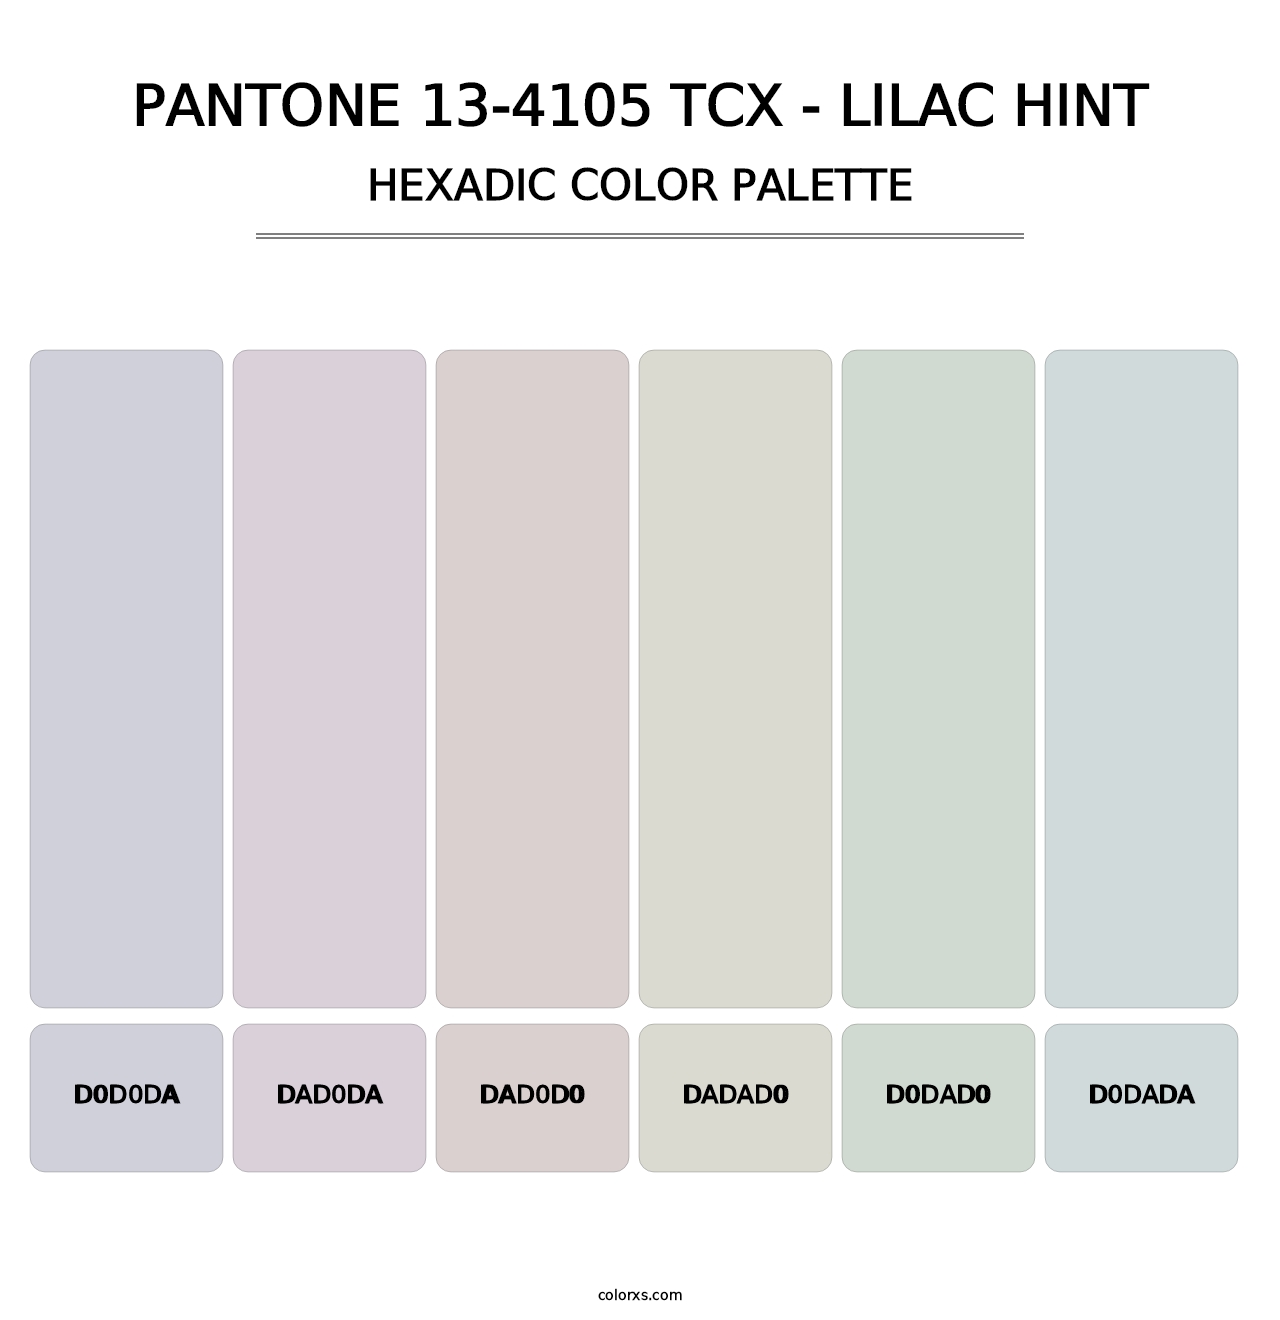 PANTONE 13-4105 TCX - Lilac Hint - Hexadic Color Palette